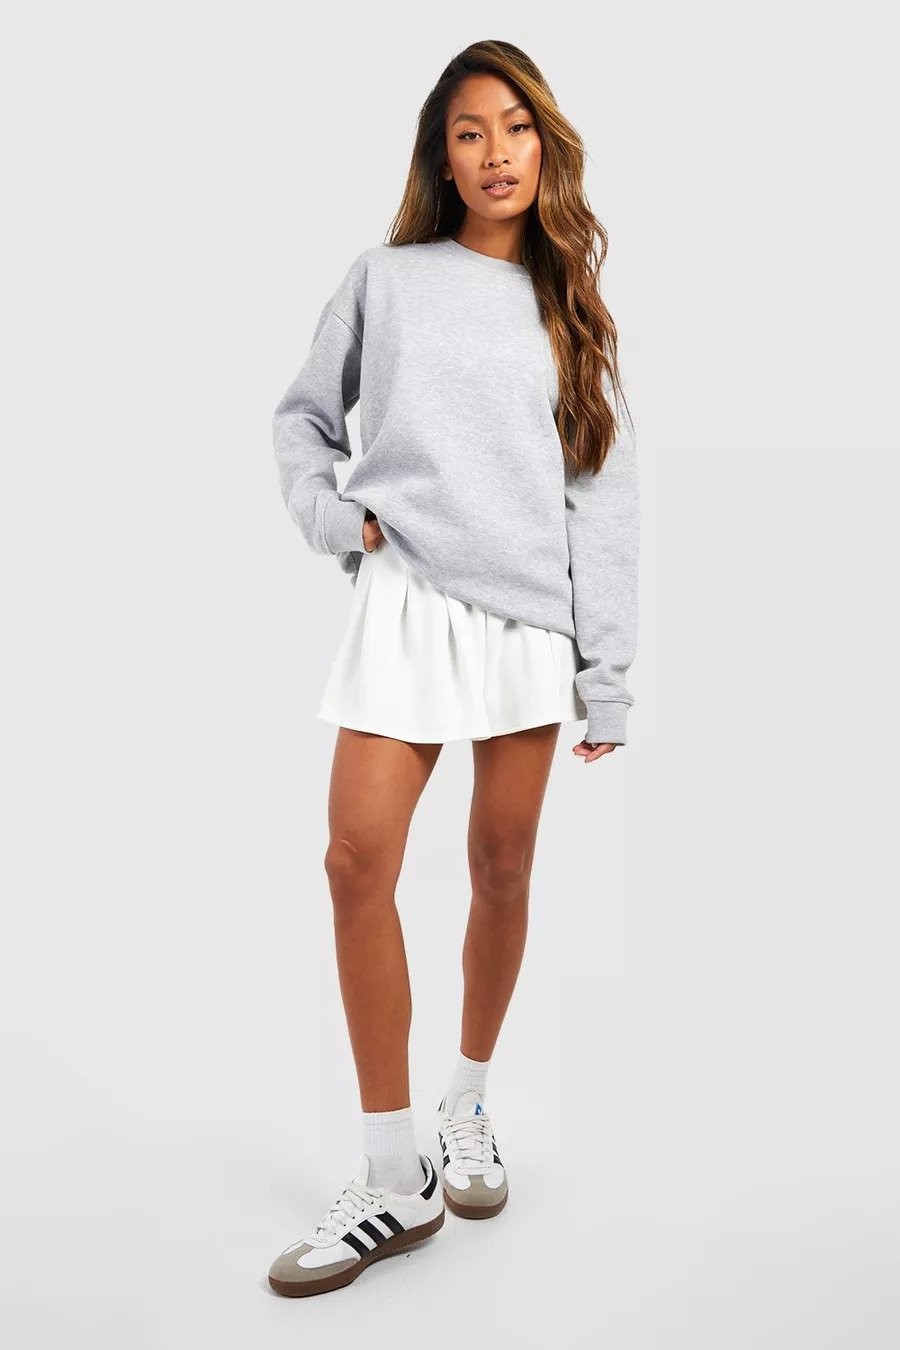 Sweatshirt, Tennis Skirt, & Sneakers